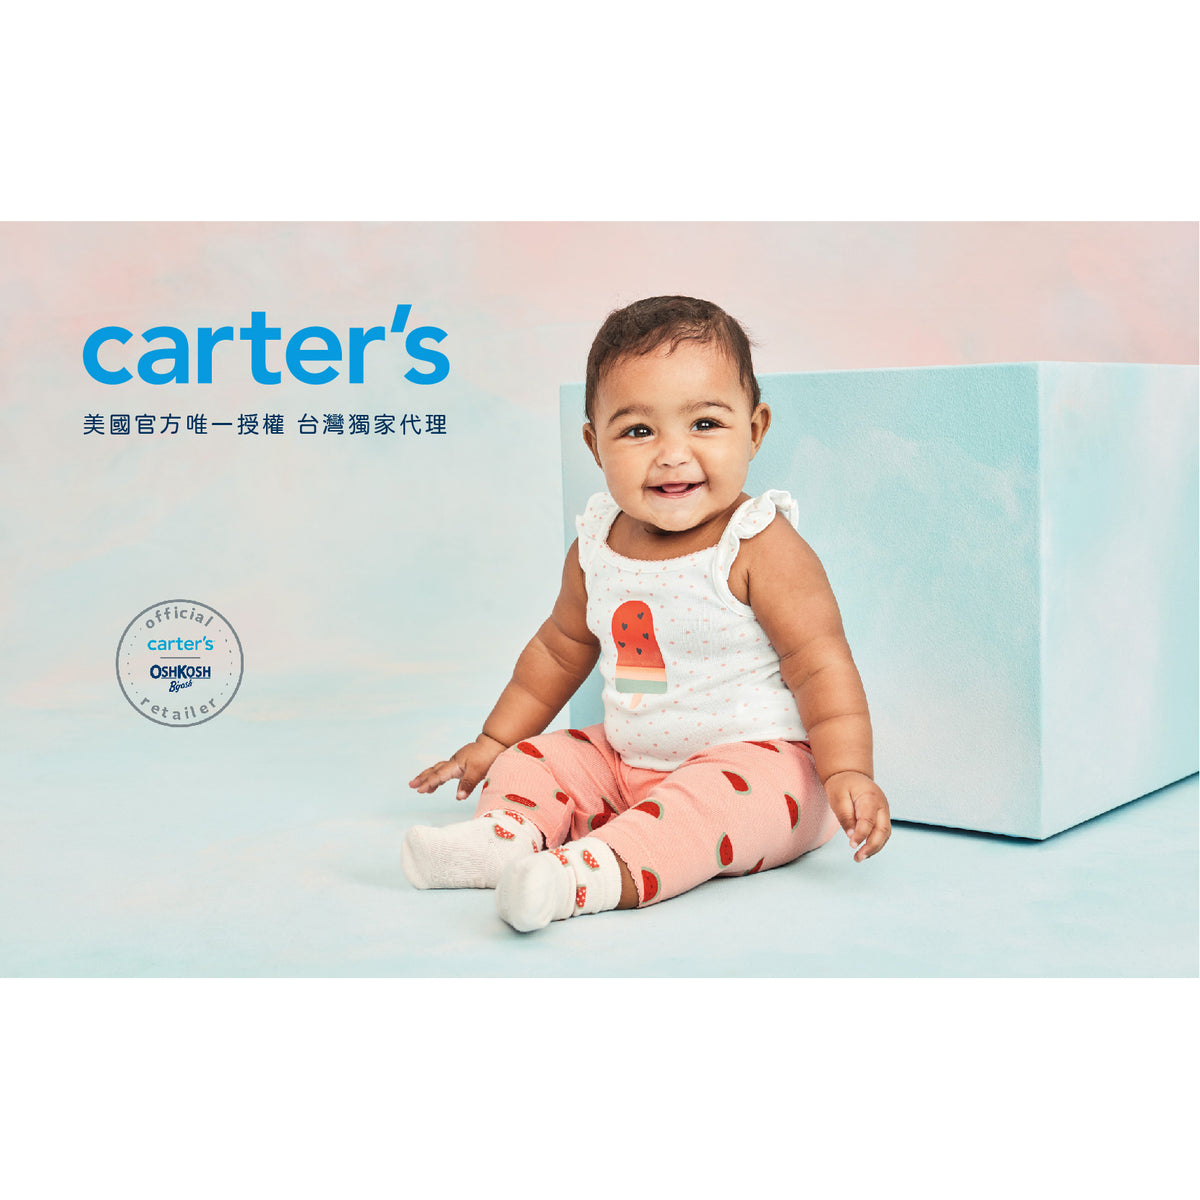 Carter's 可愛小甜心2件組套裝(6M-24M)